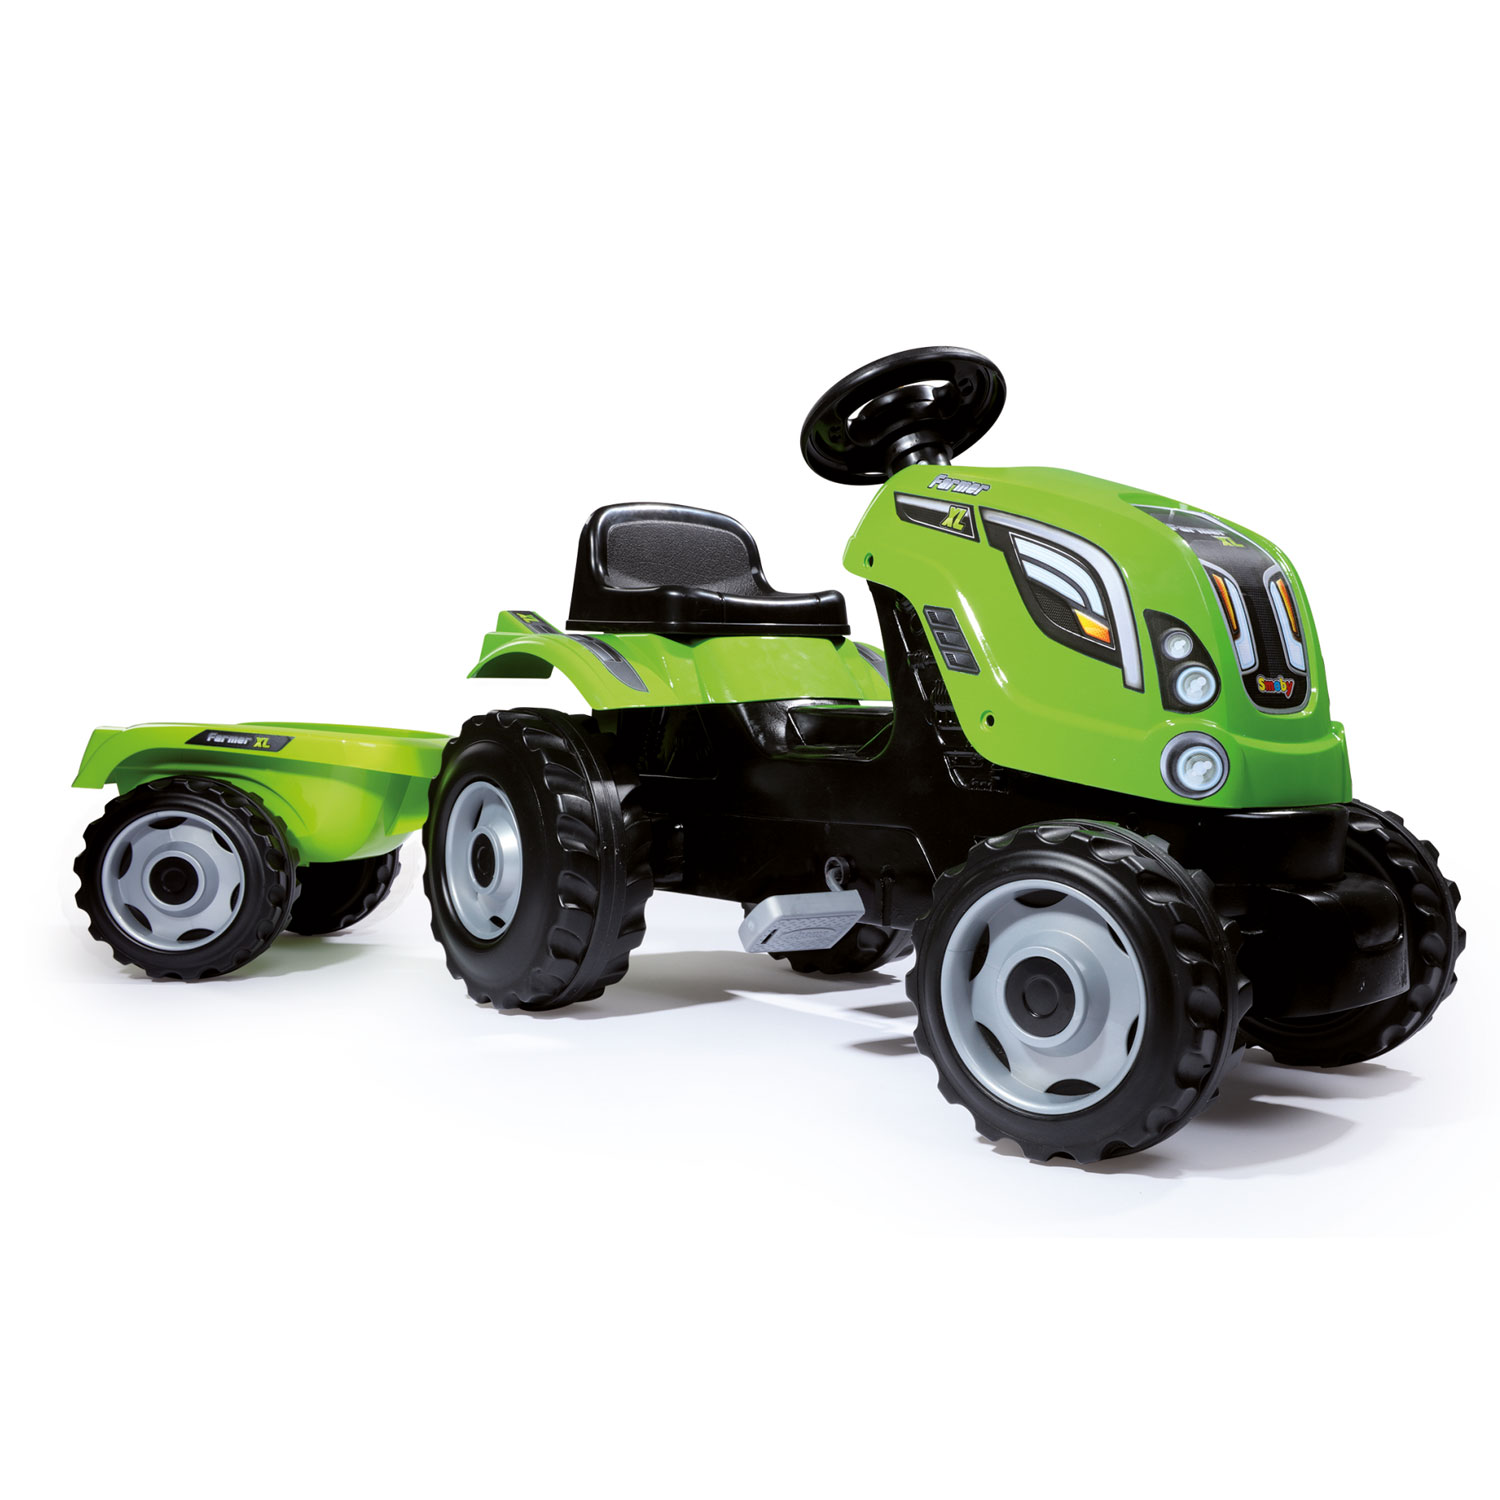 Smoby Traktor mit Anhänger – Grün